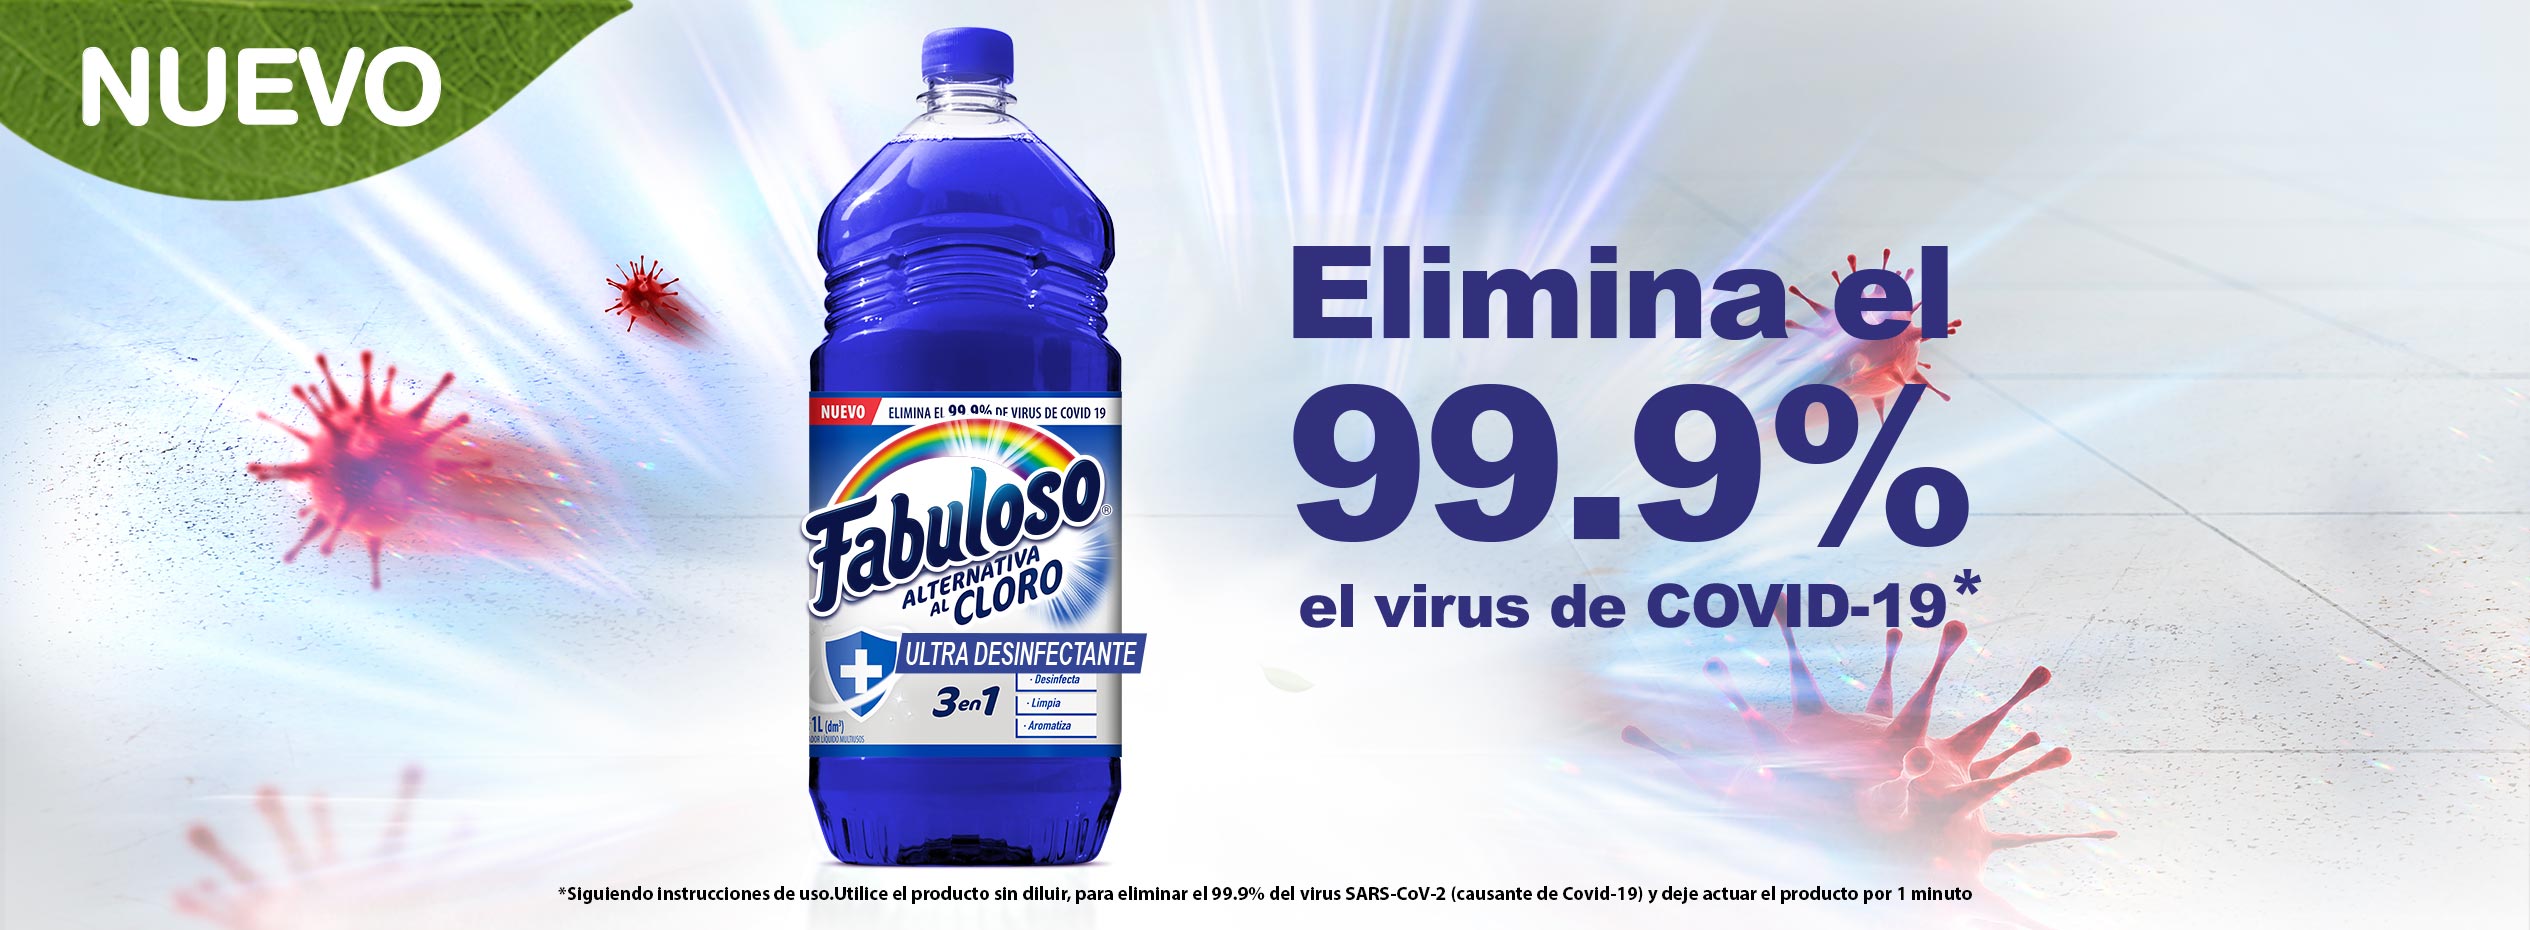 Fabuloso® Alternativa al Cloro, elimina el 99.9% el virus de COVID-19